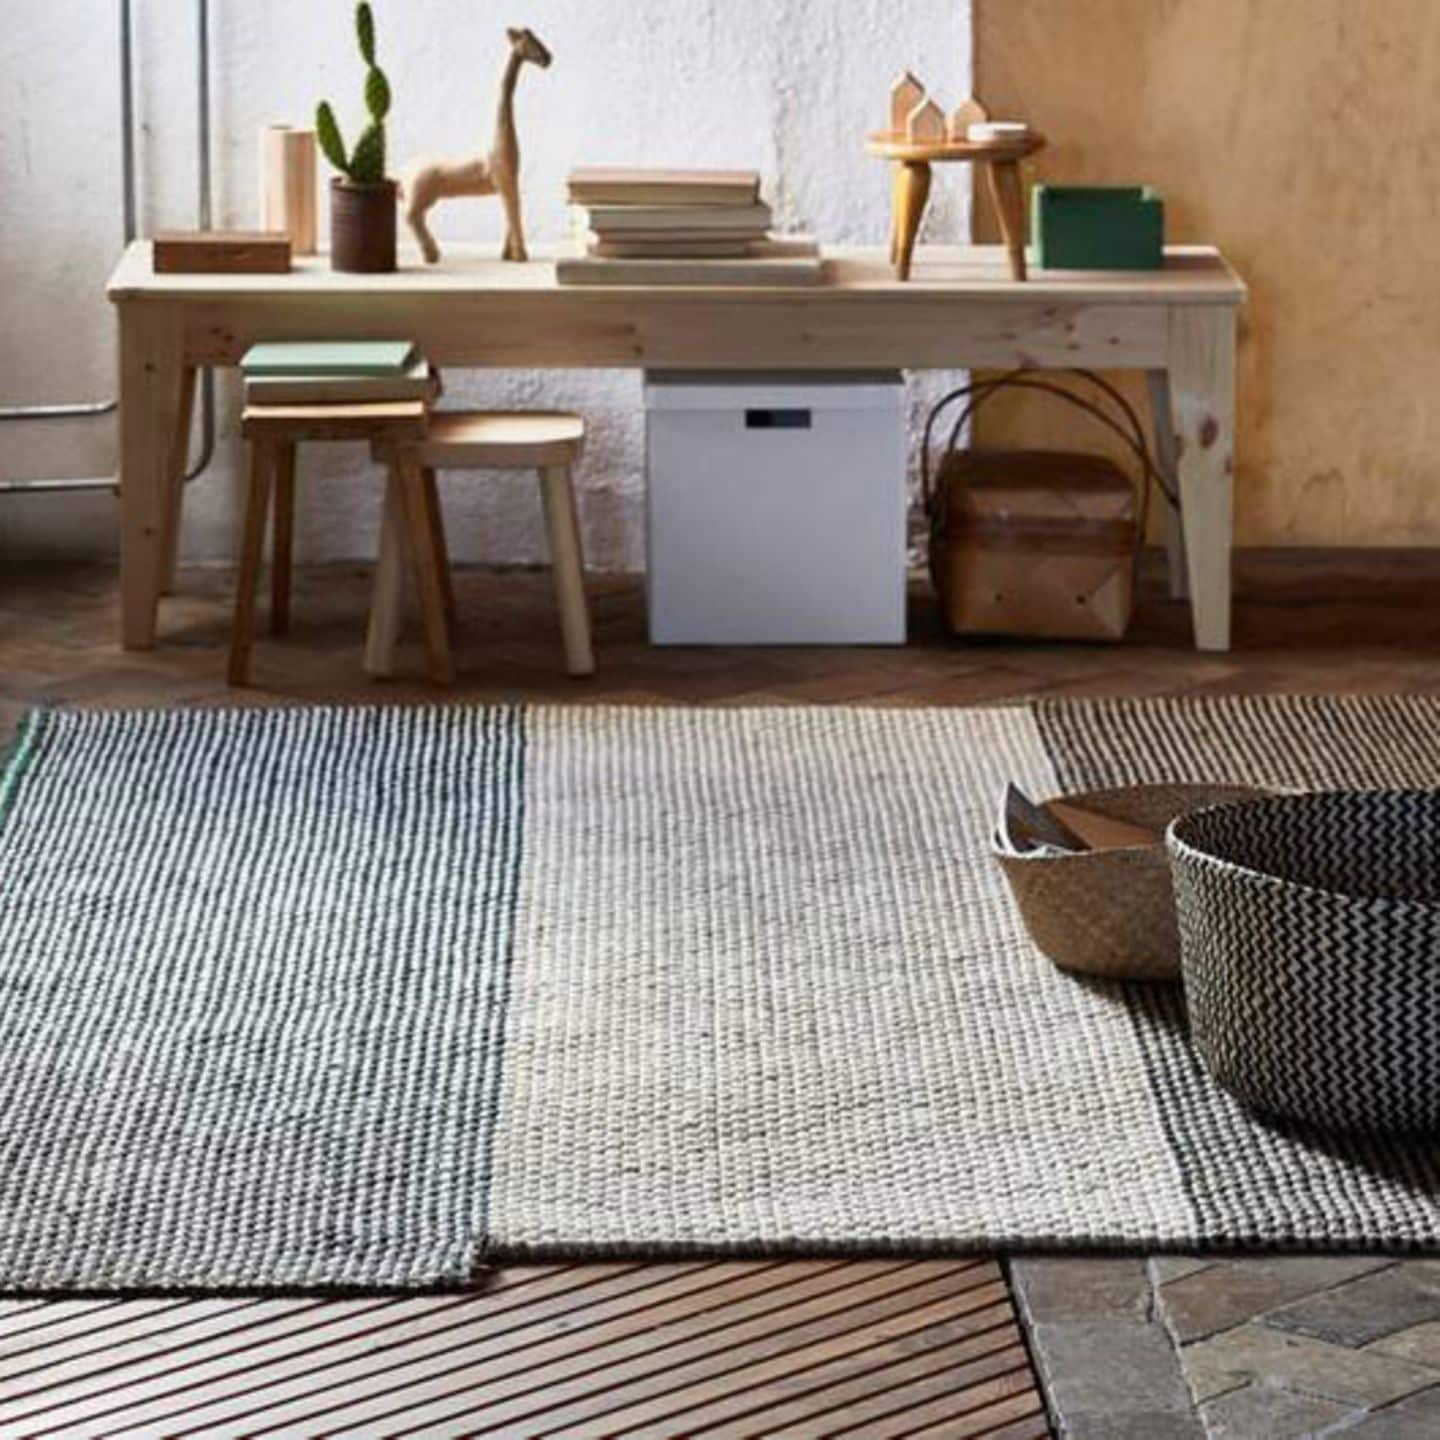 die schönsten teppiche – für wohnzimmer, schlafzimmer & co